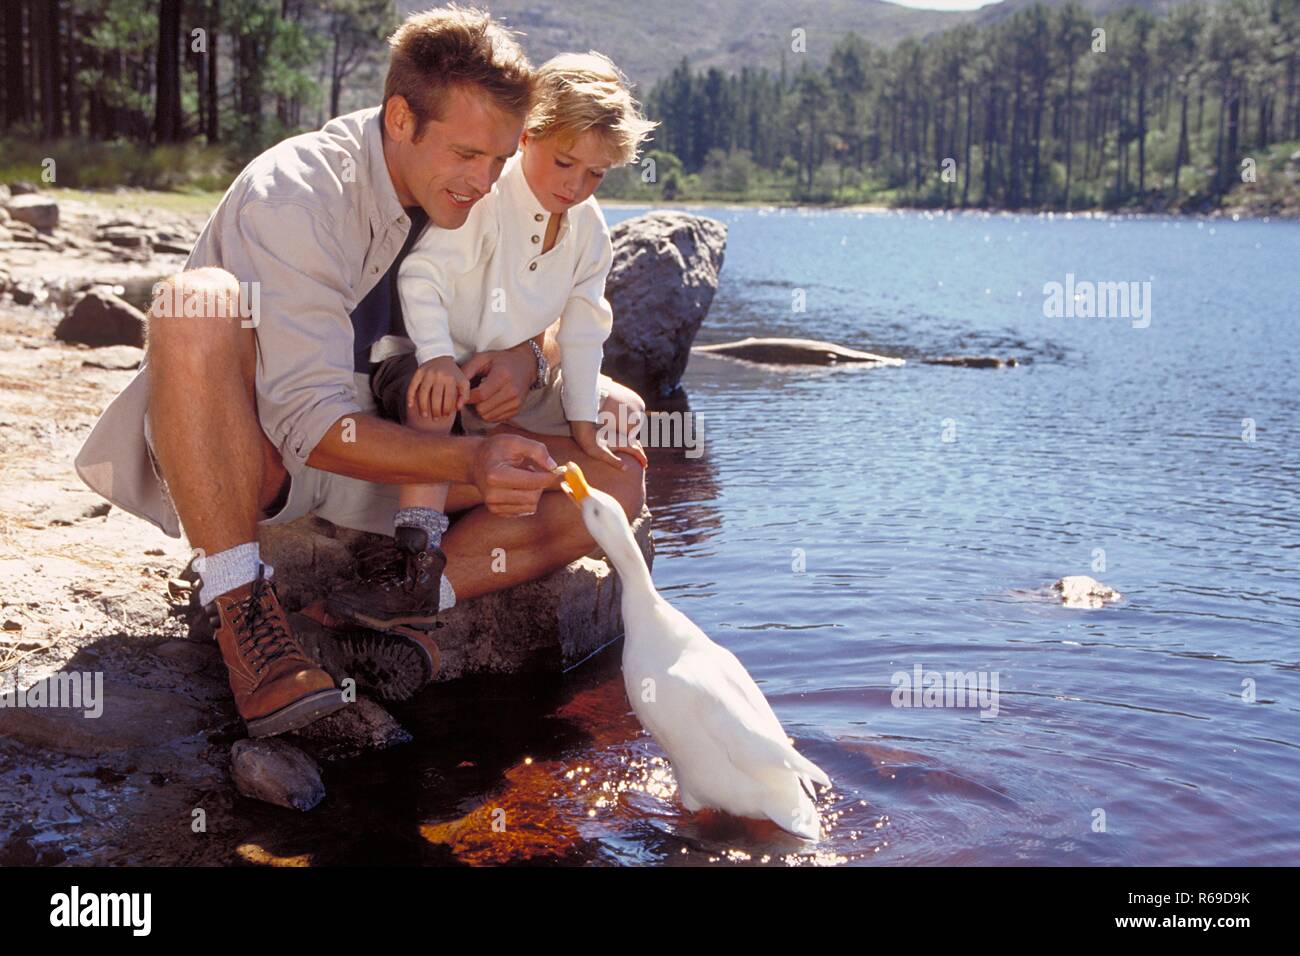 All'aperto, 6 Jahre alter blondr Junge und sein Vater hocken am Ufer eines vede und fuettern eine Ente Foto Stock